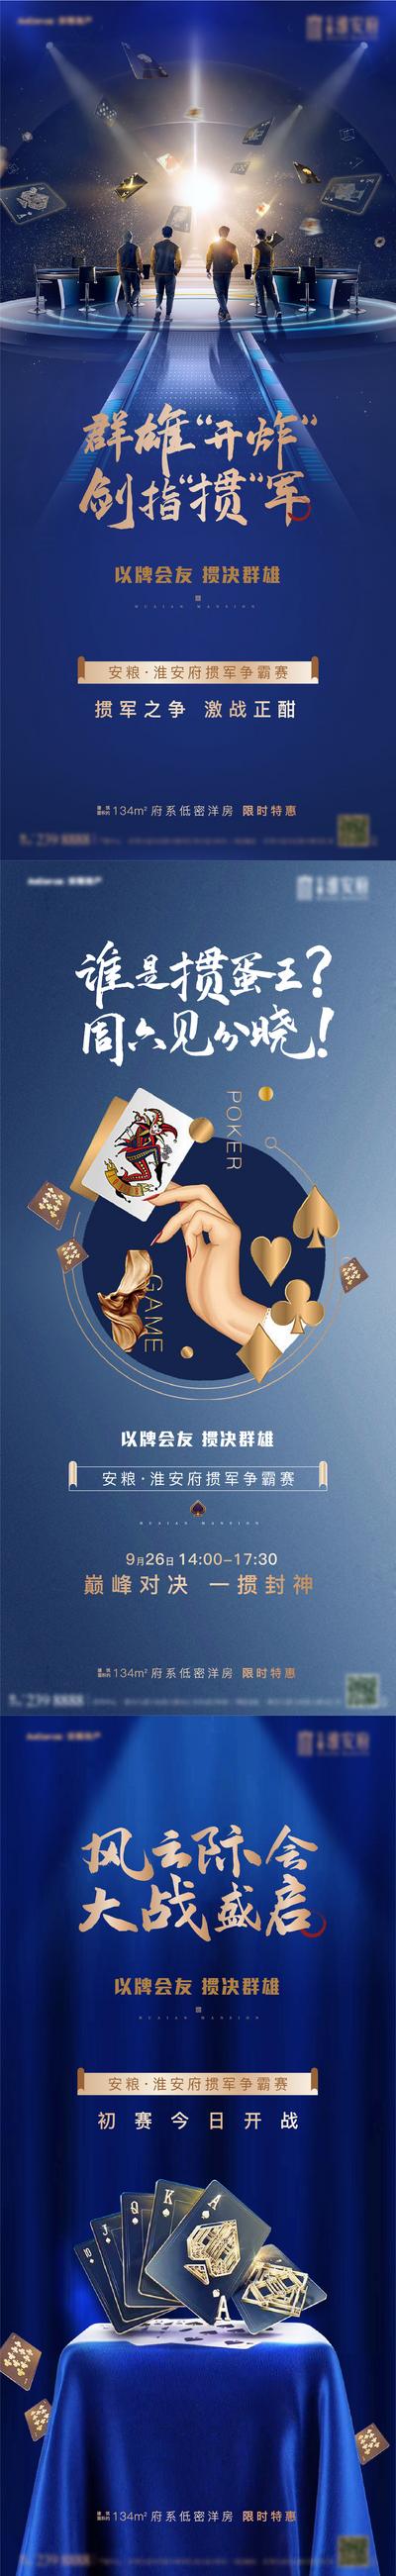 南门网 海报 地产 掼蛋画面  比赛 火爆  打牌 开战 扑克牌